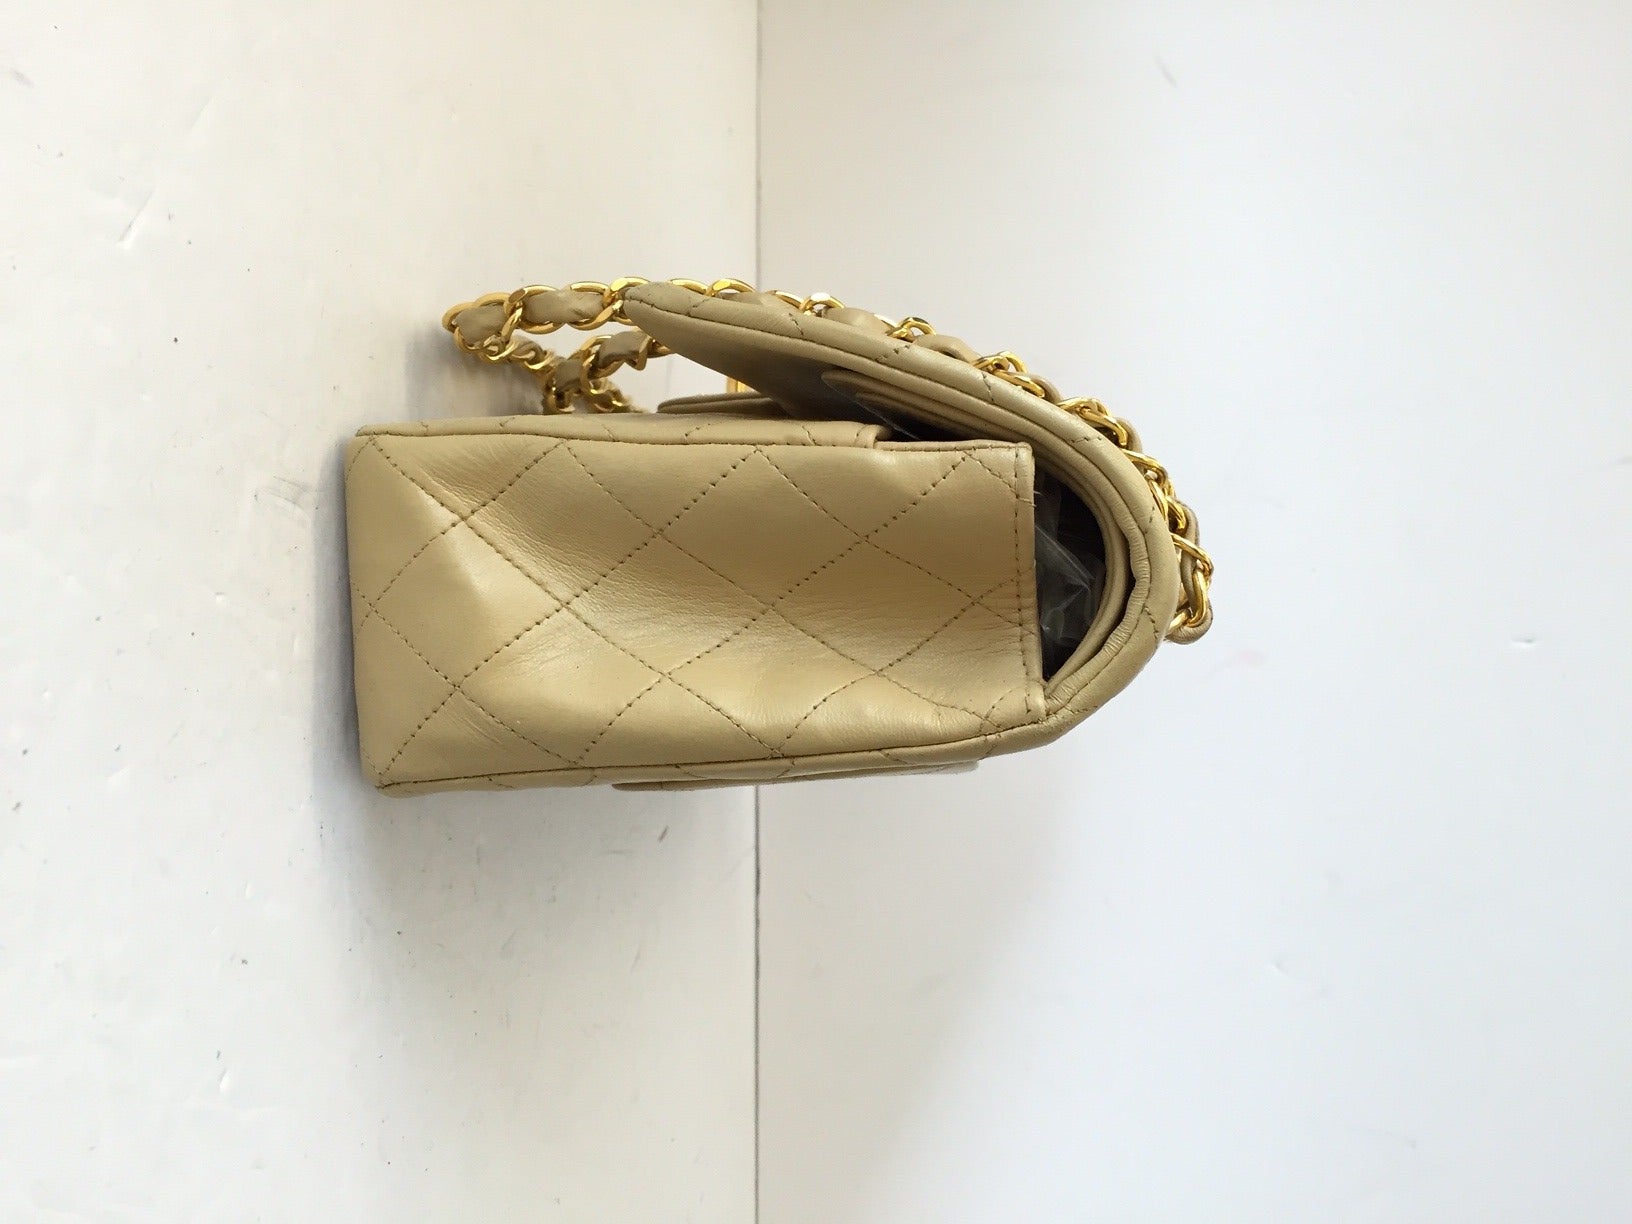 Brand: Chanel
Manufactured: France 
Color: Beige 
Size: Medium

Bag Length: 10